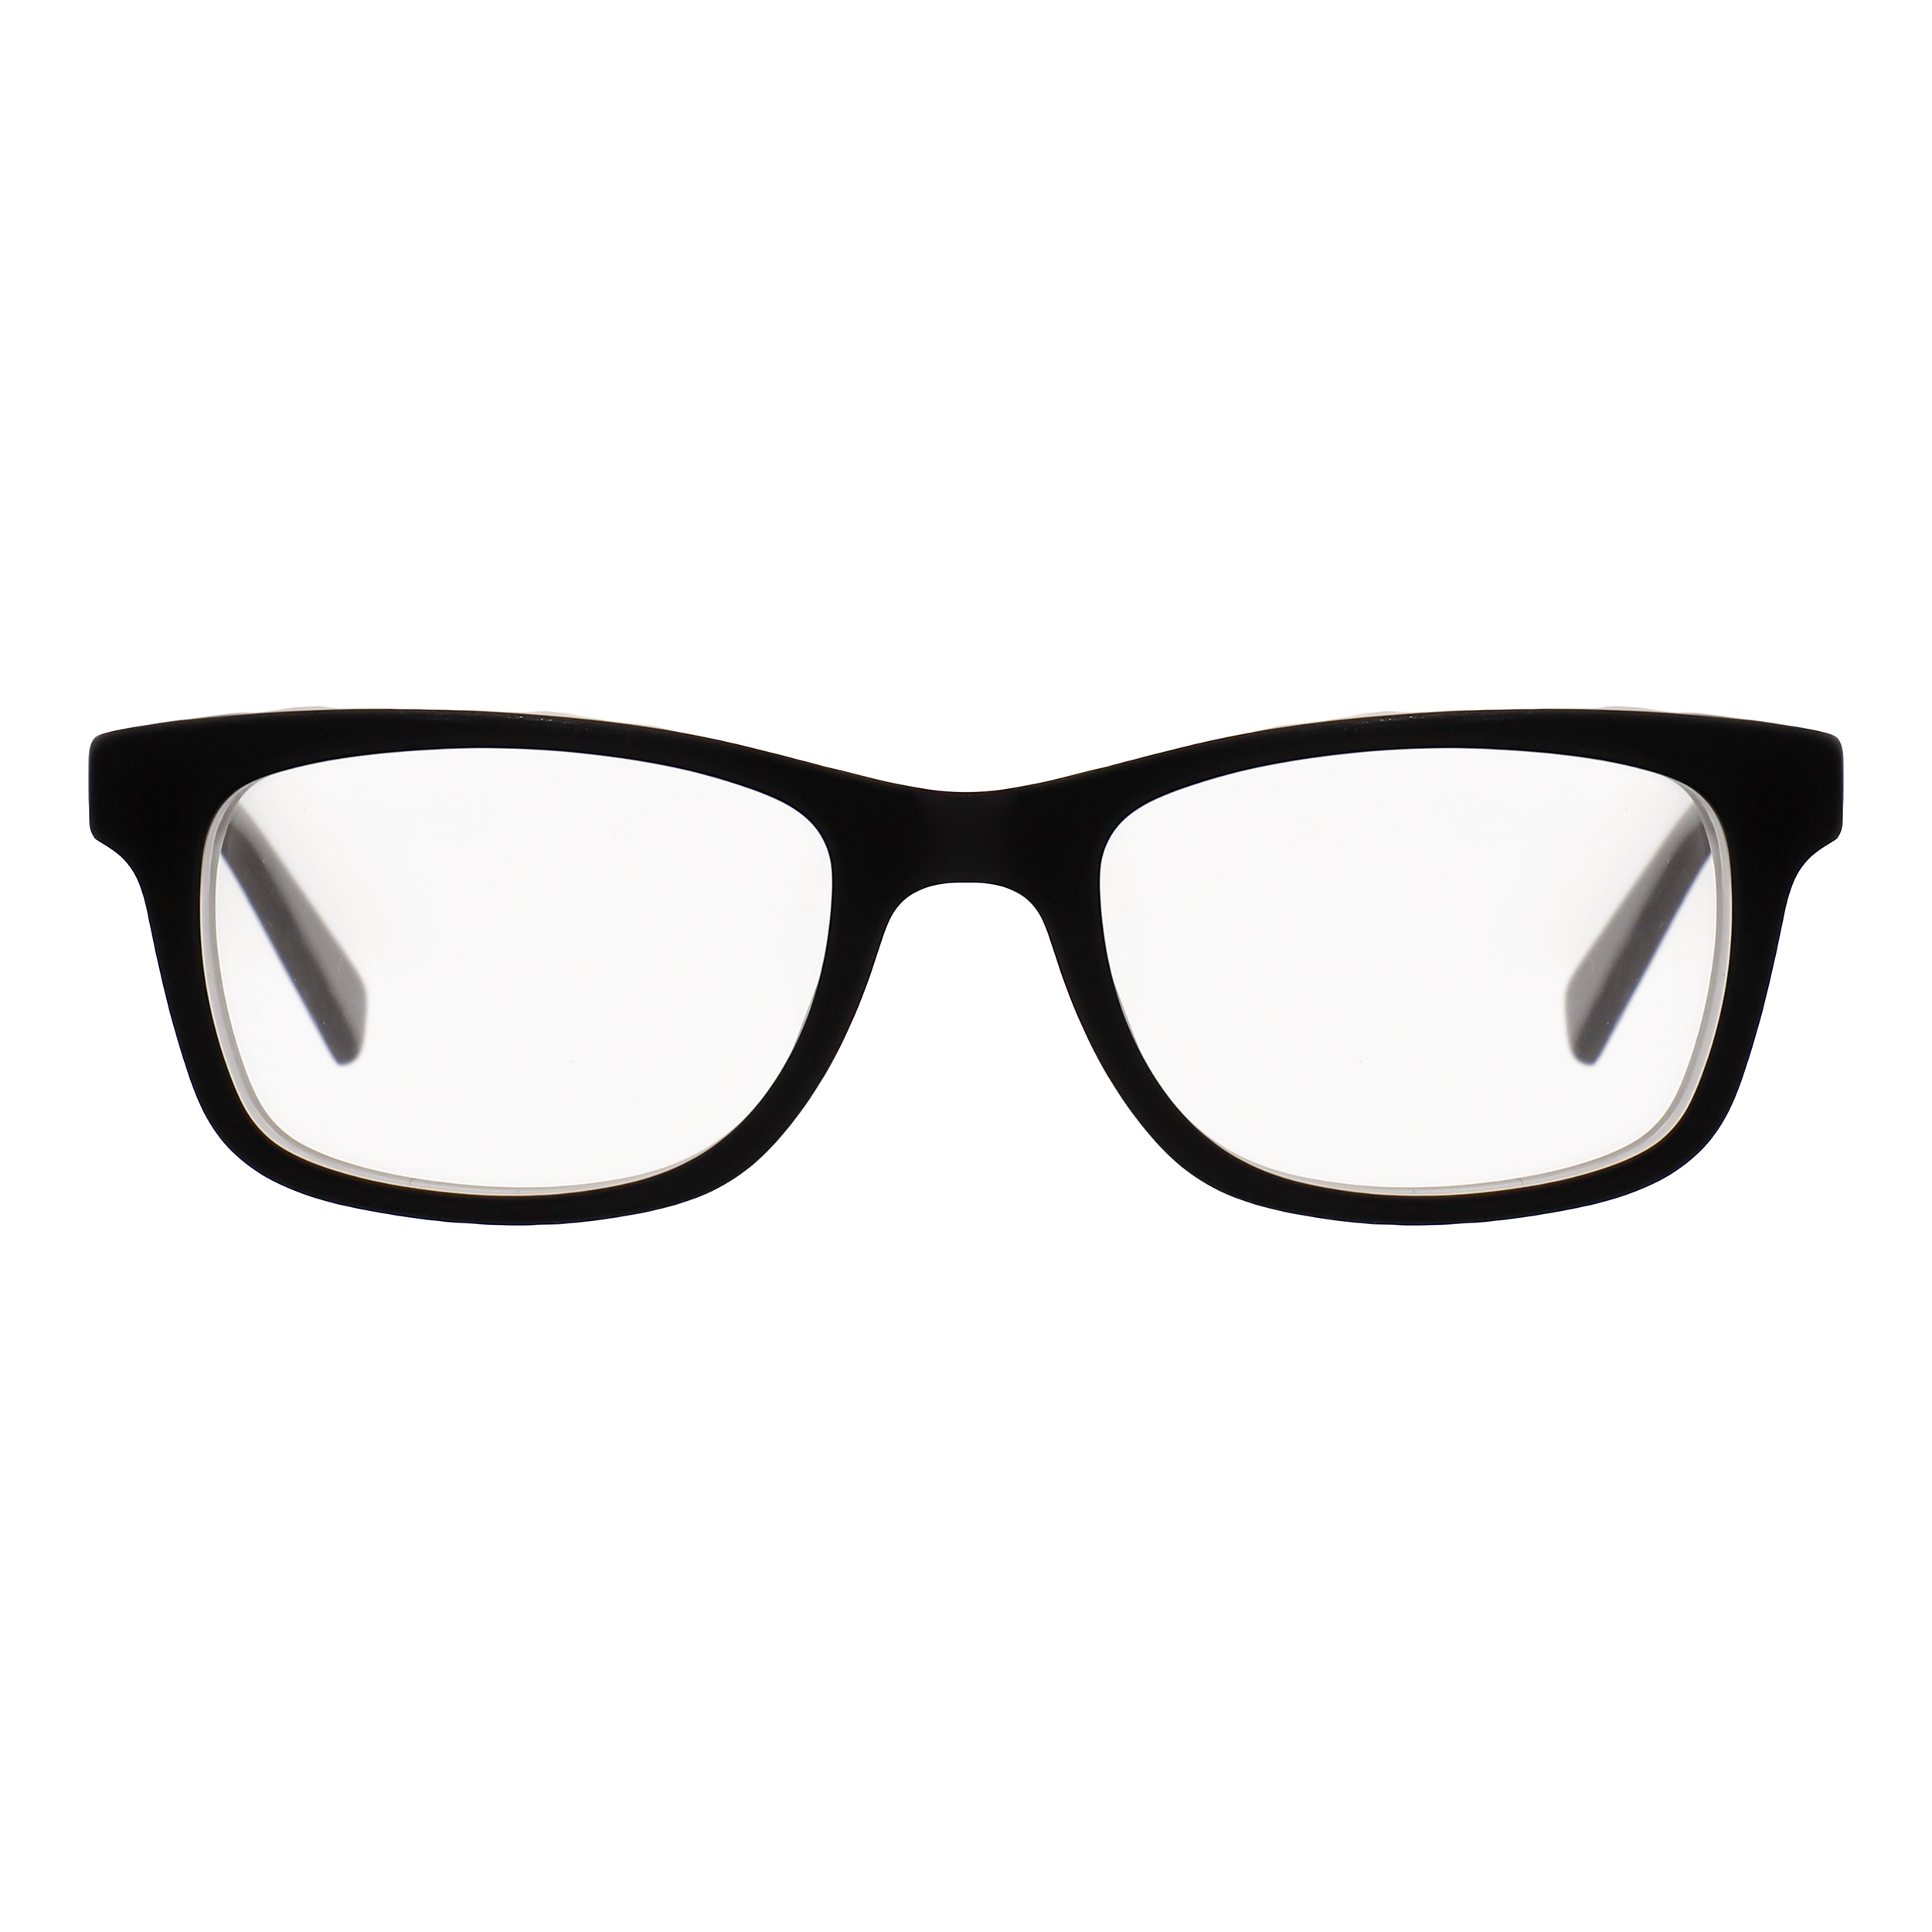 فریم عینک طبی نایک مدل 5509-18